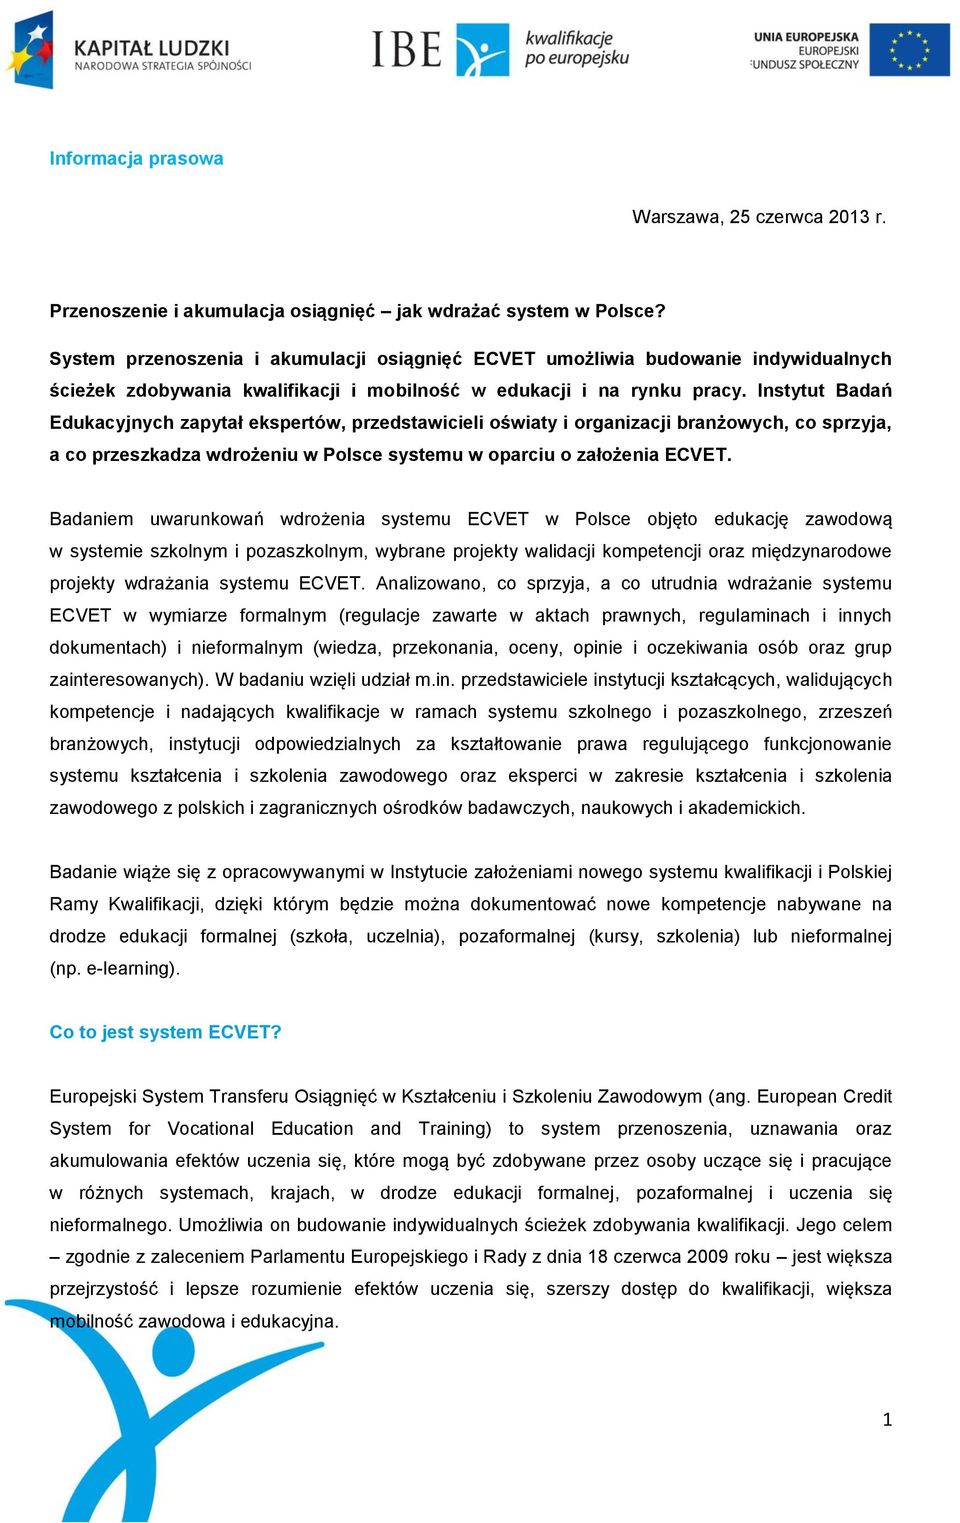 Instytut Badań Edukacyjnych zapytał ekspertów, przedstawicieli oświaty i organizacji branżowych, co sprzyja, a co przeszkadza wdrożeniu w Polsce systemu w oparciu o założenia ECVET.